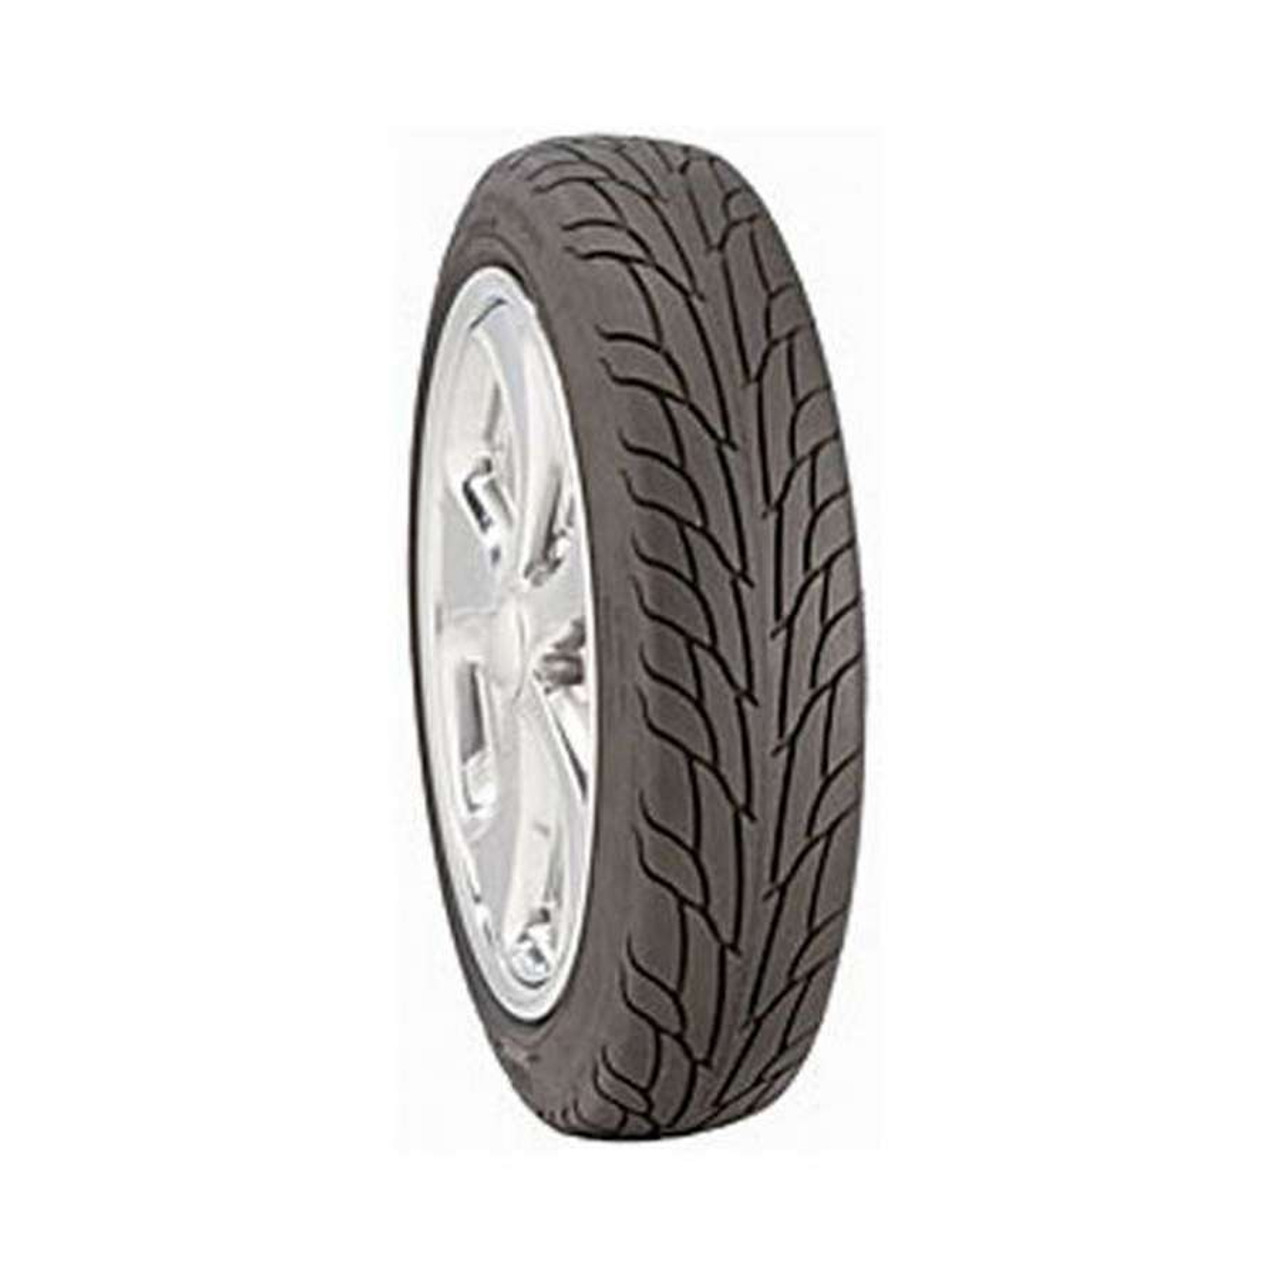 24x5.00R15LT Sportsman S/R Radial Tire